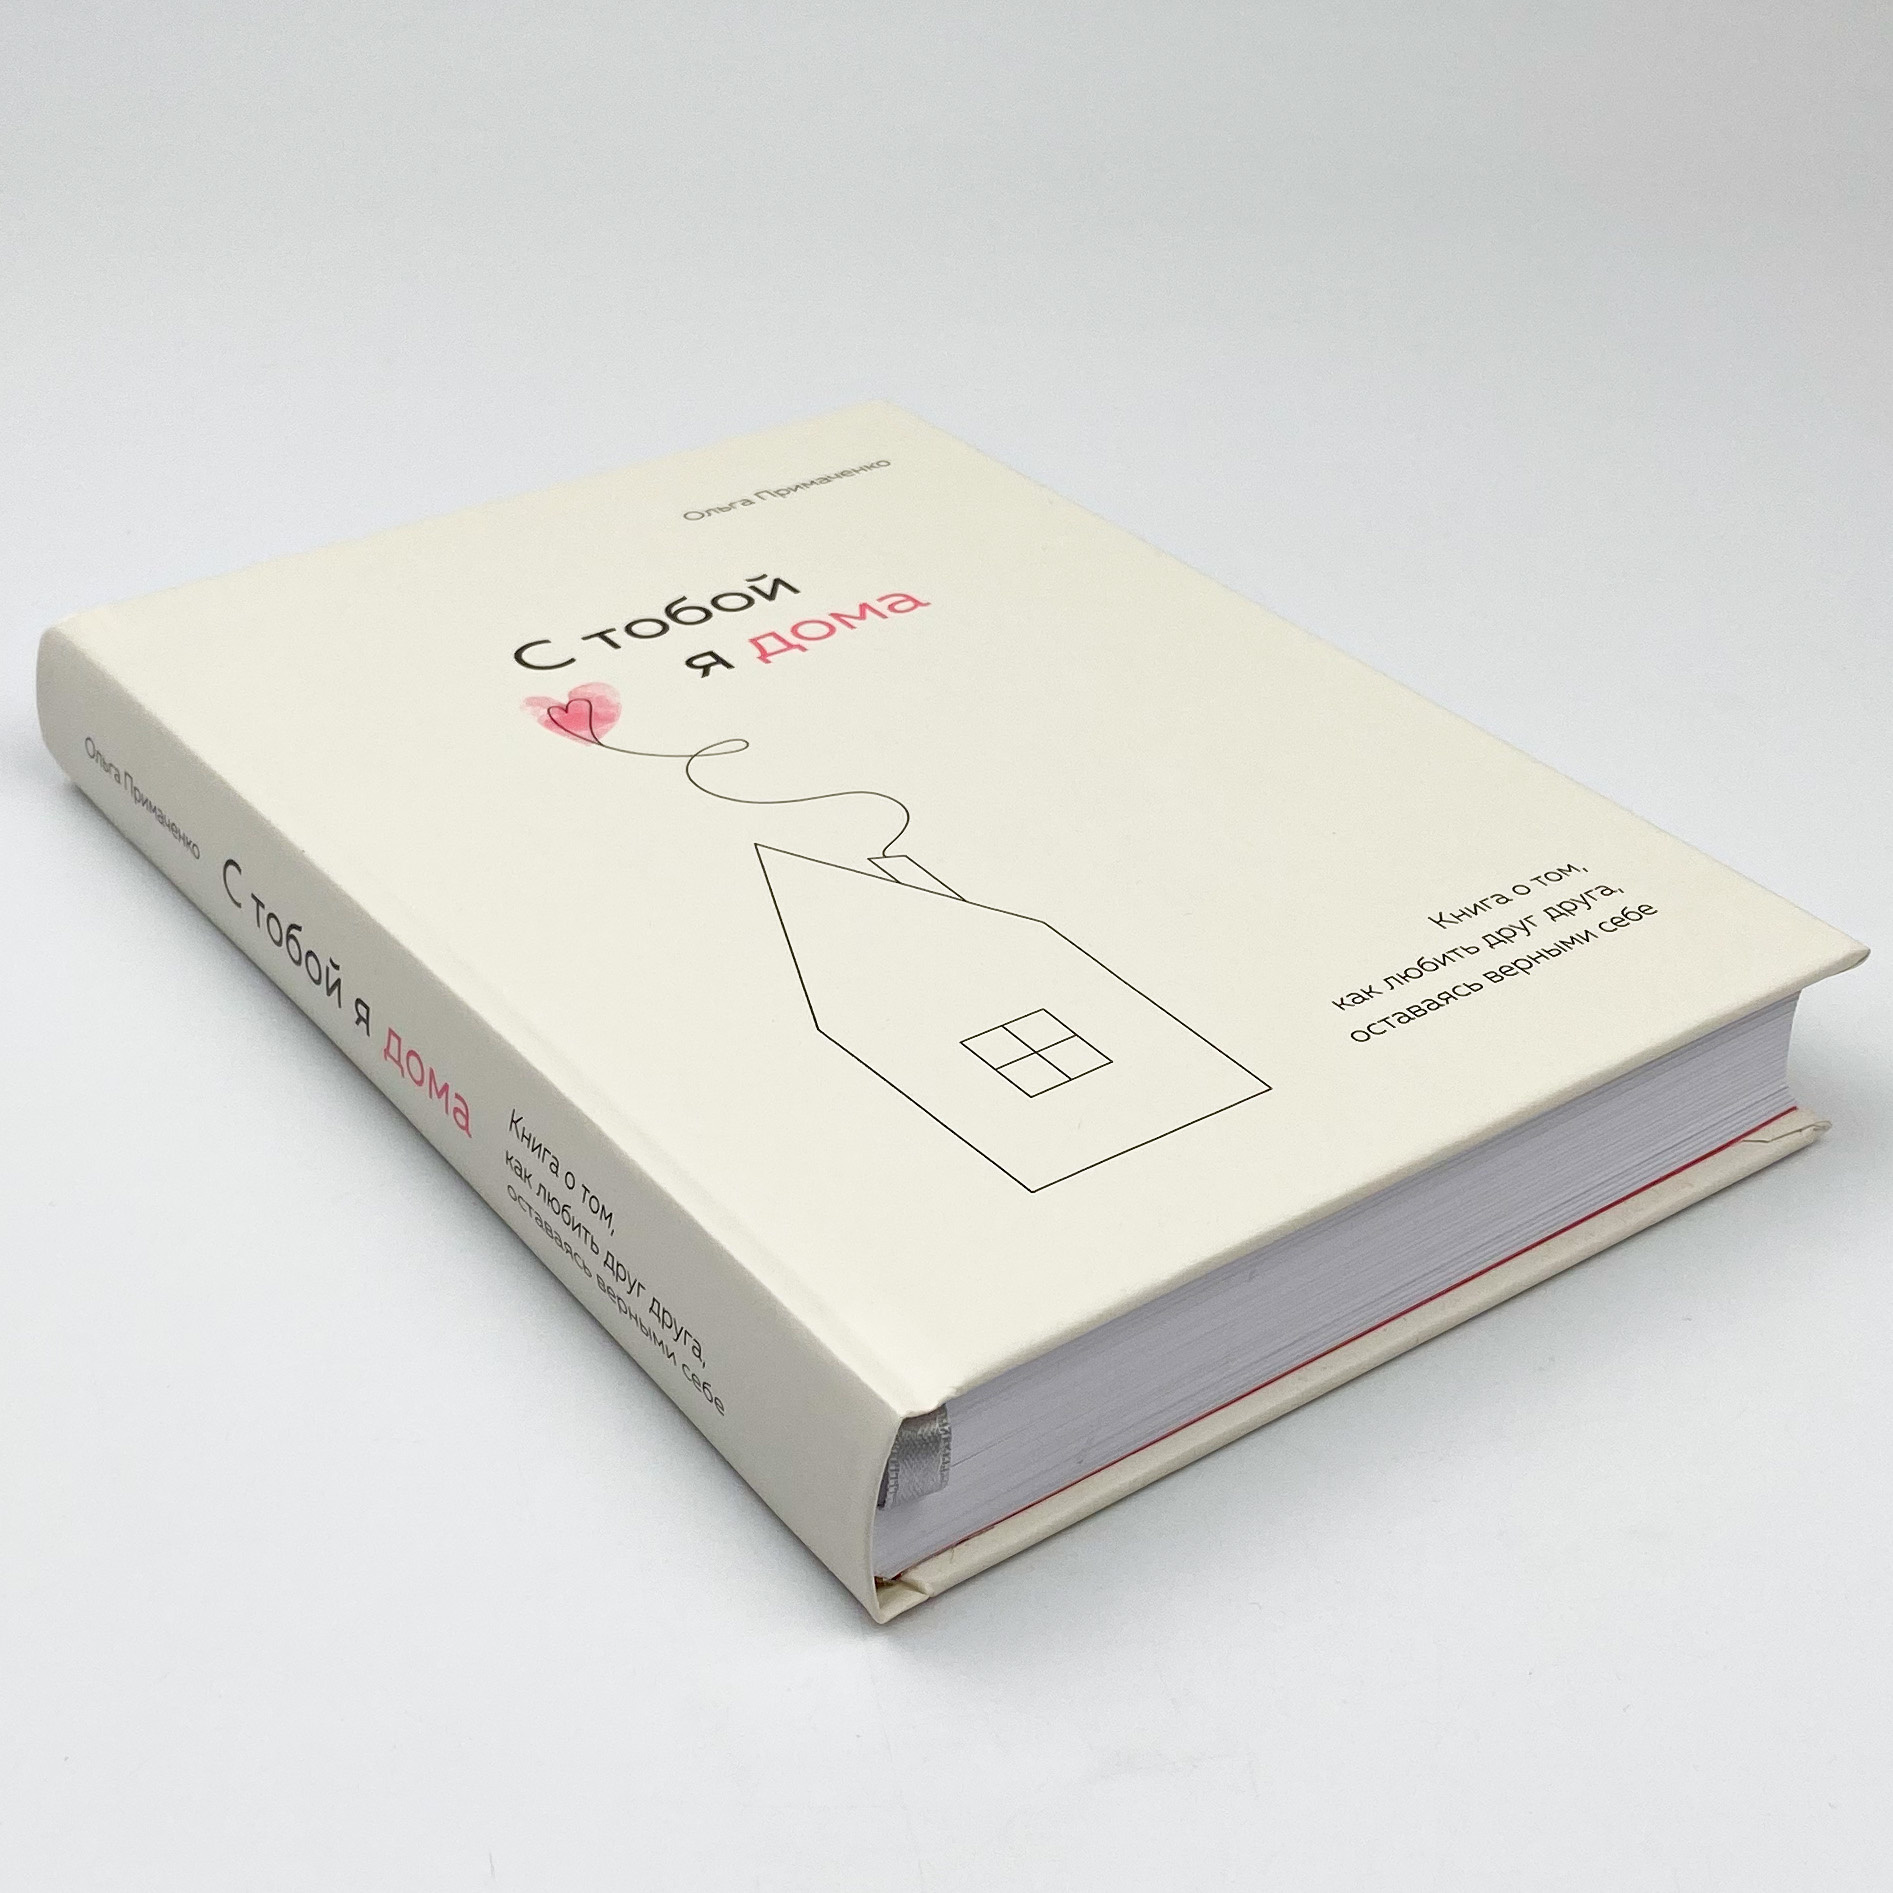 С тобой я дома. Книга о том, как любить друг друга, оставаясь верными себе  . Автор — Ольга Примаченко. 